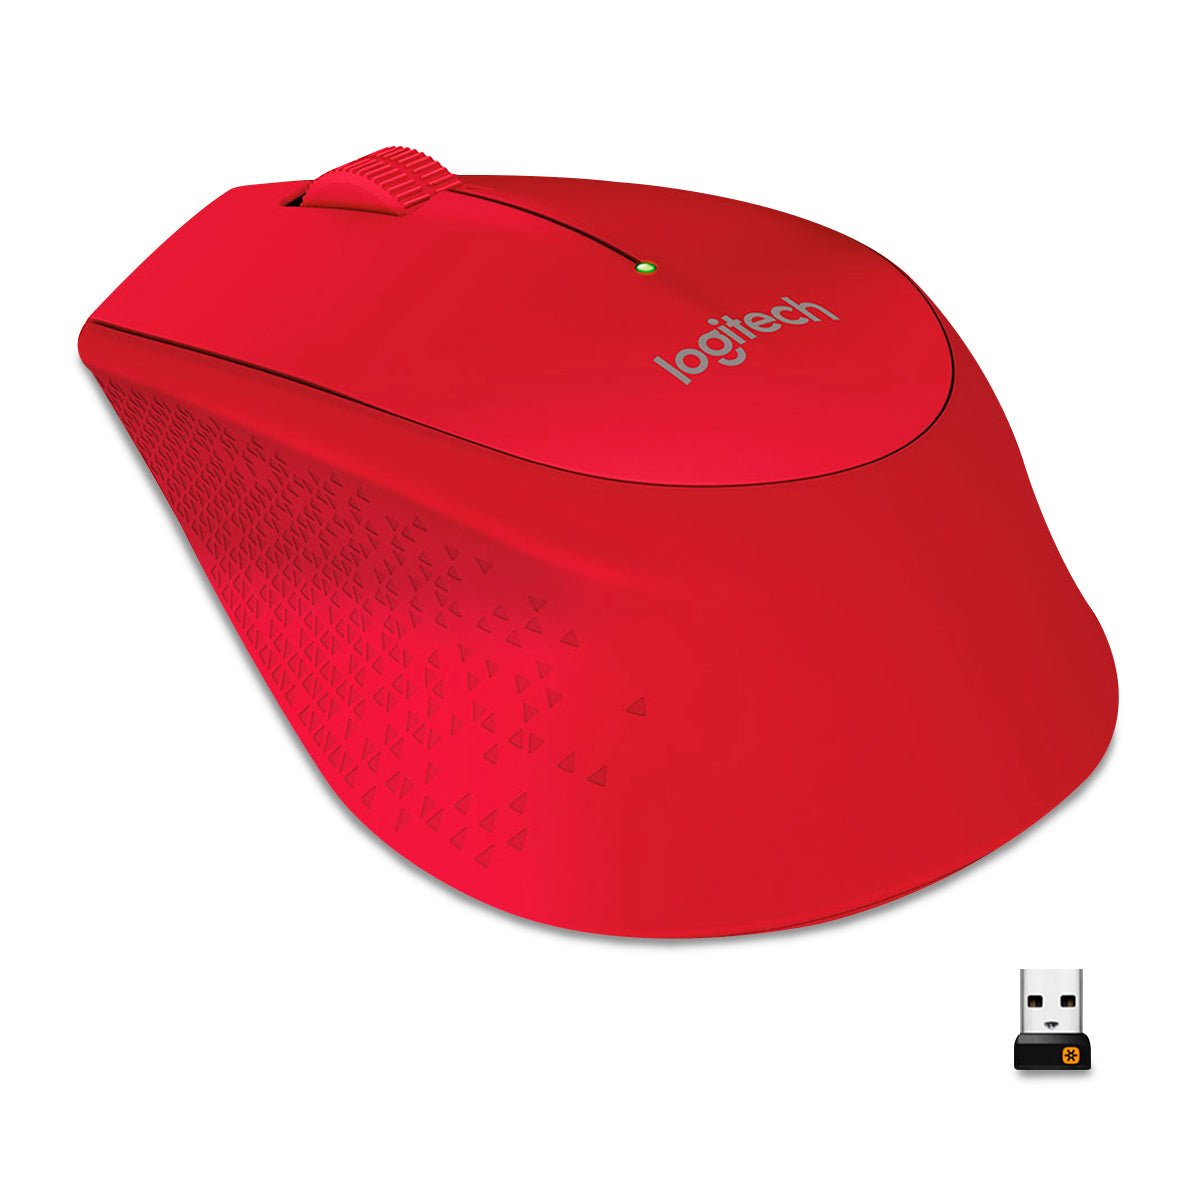 Mouse LOGITECH M280, Rojo, 3 botones, USB, Óptico, 1000 DPI